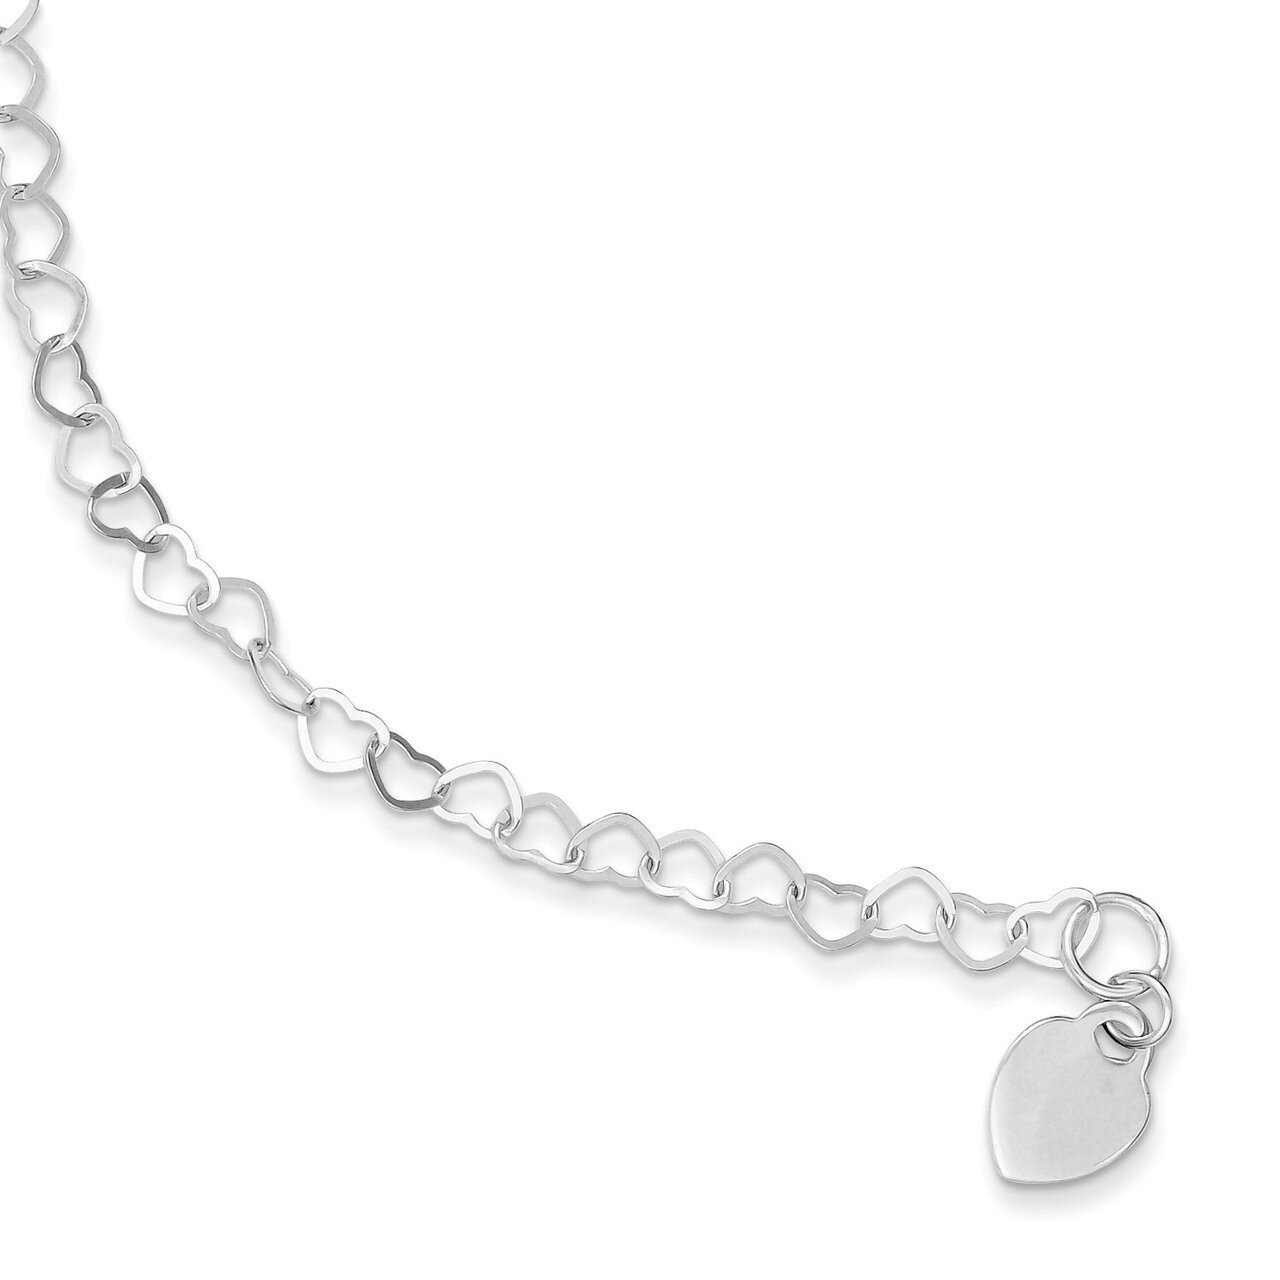 6 Inch Heart Link Childs Bracelet Sterling Silver QG1452-6